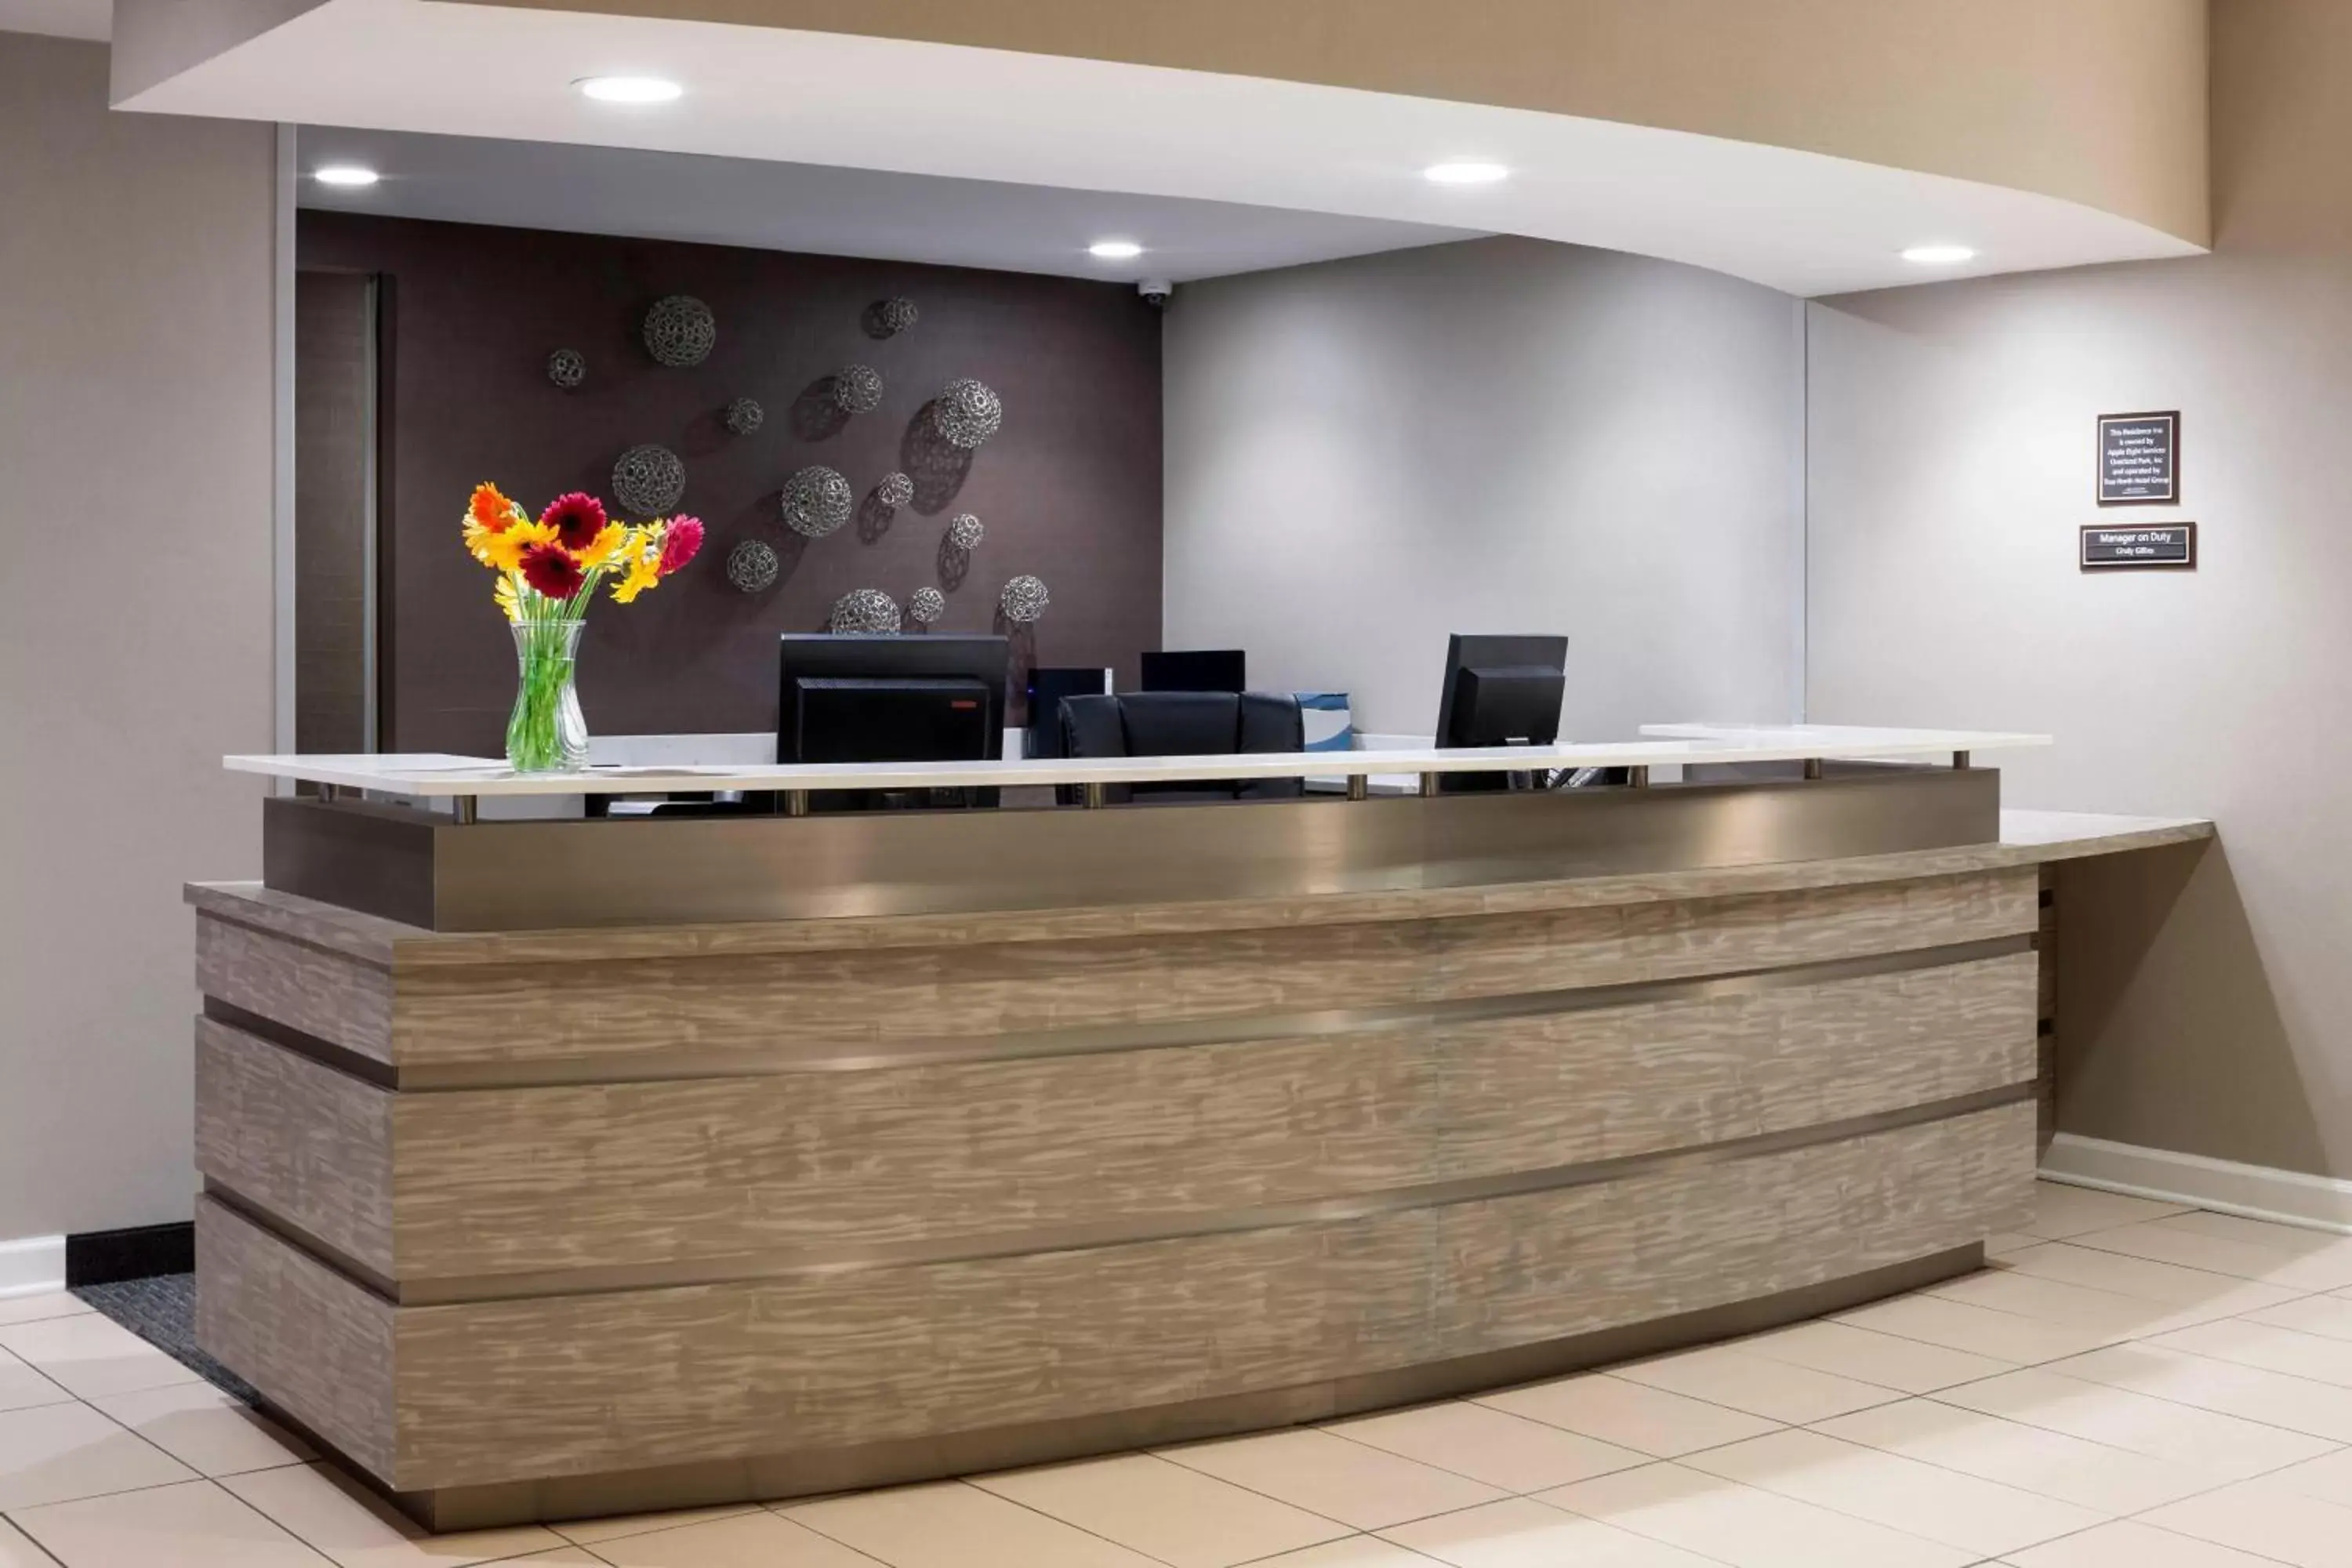 Lobby or reception, Lobby/Reception in Residence Inn Kansas City Overland Park